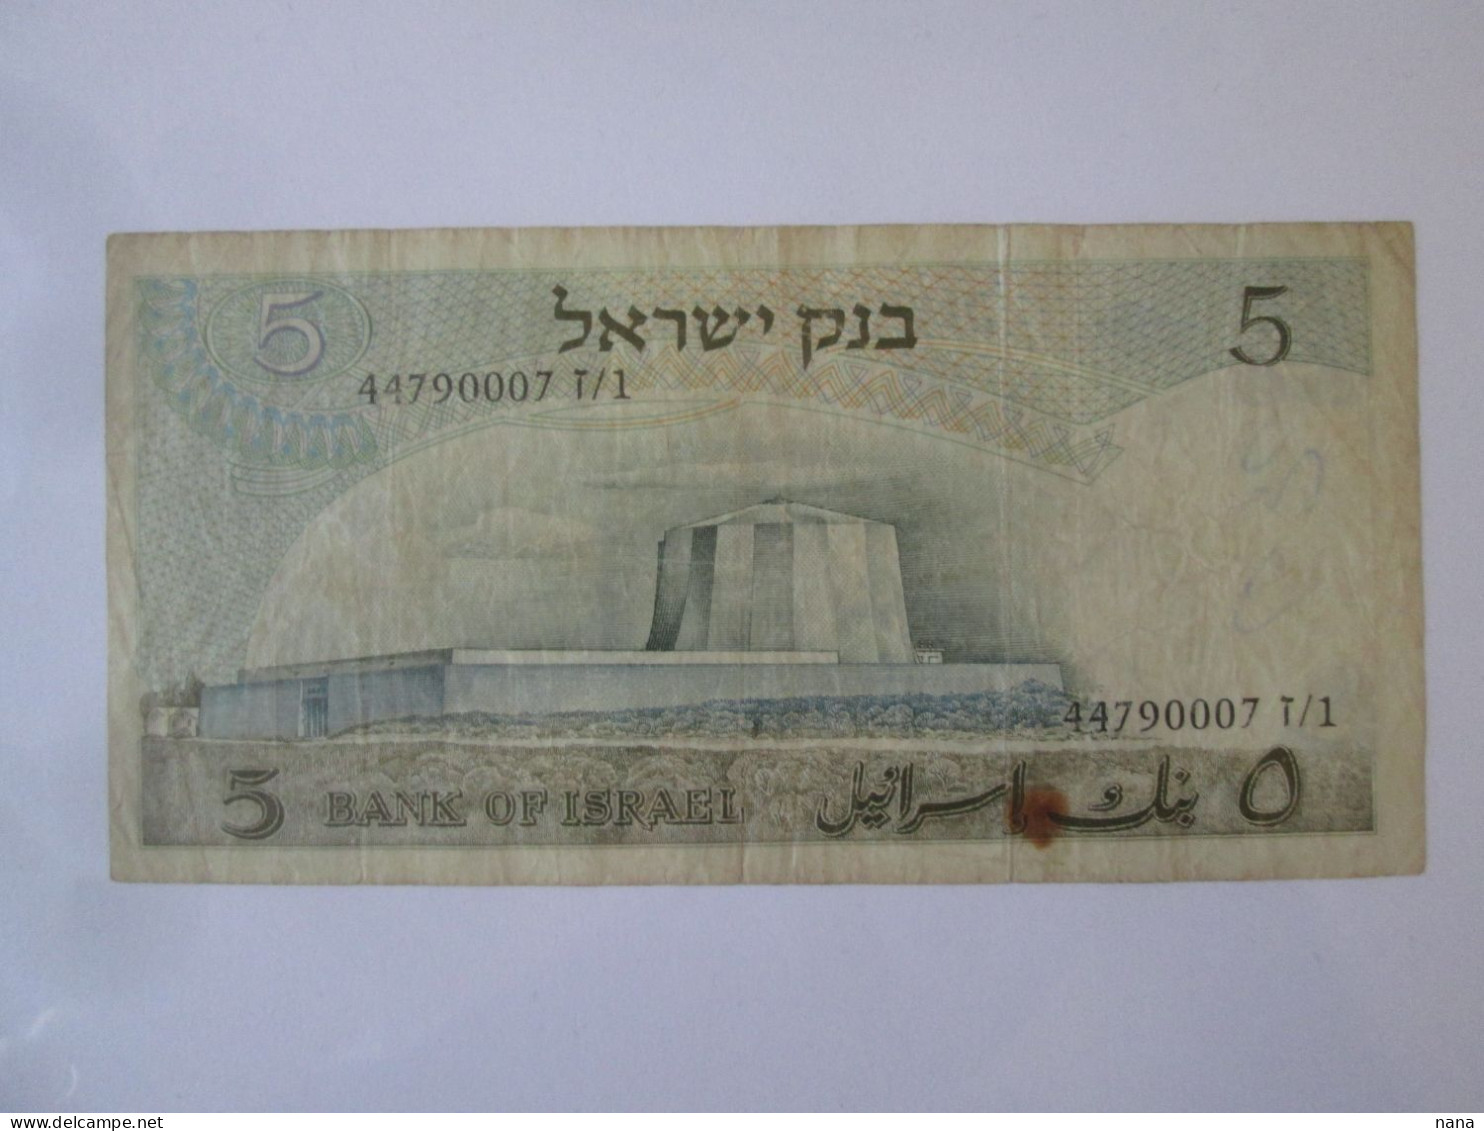 Israel 5 Lirot 1968 Banknote Series:44790007 Albert Einstein - Israel